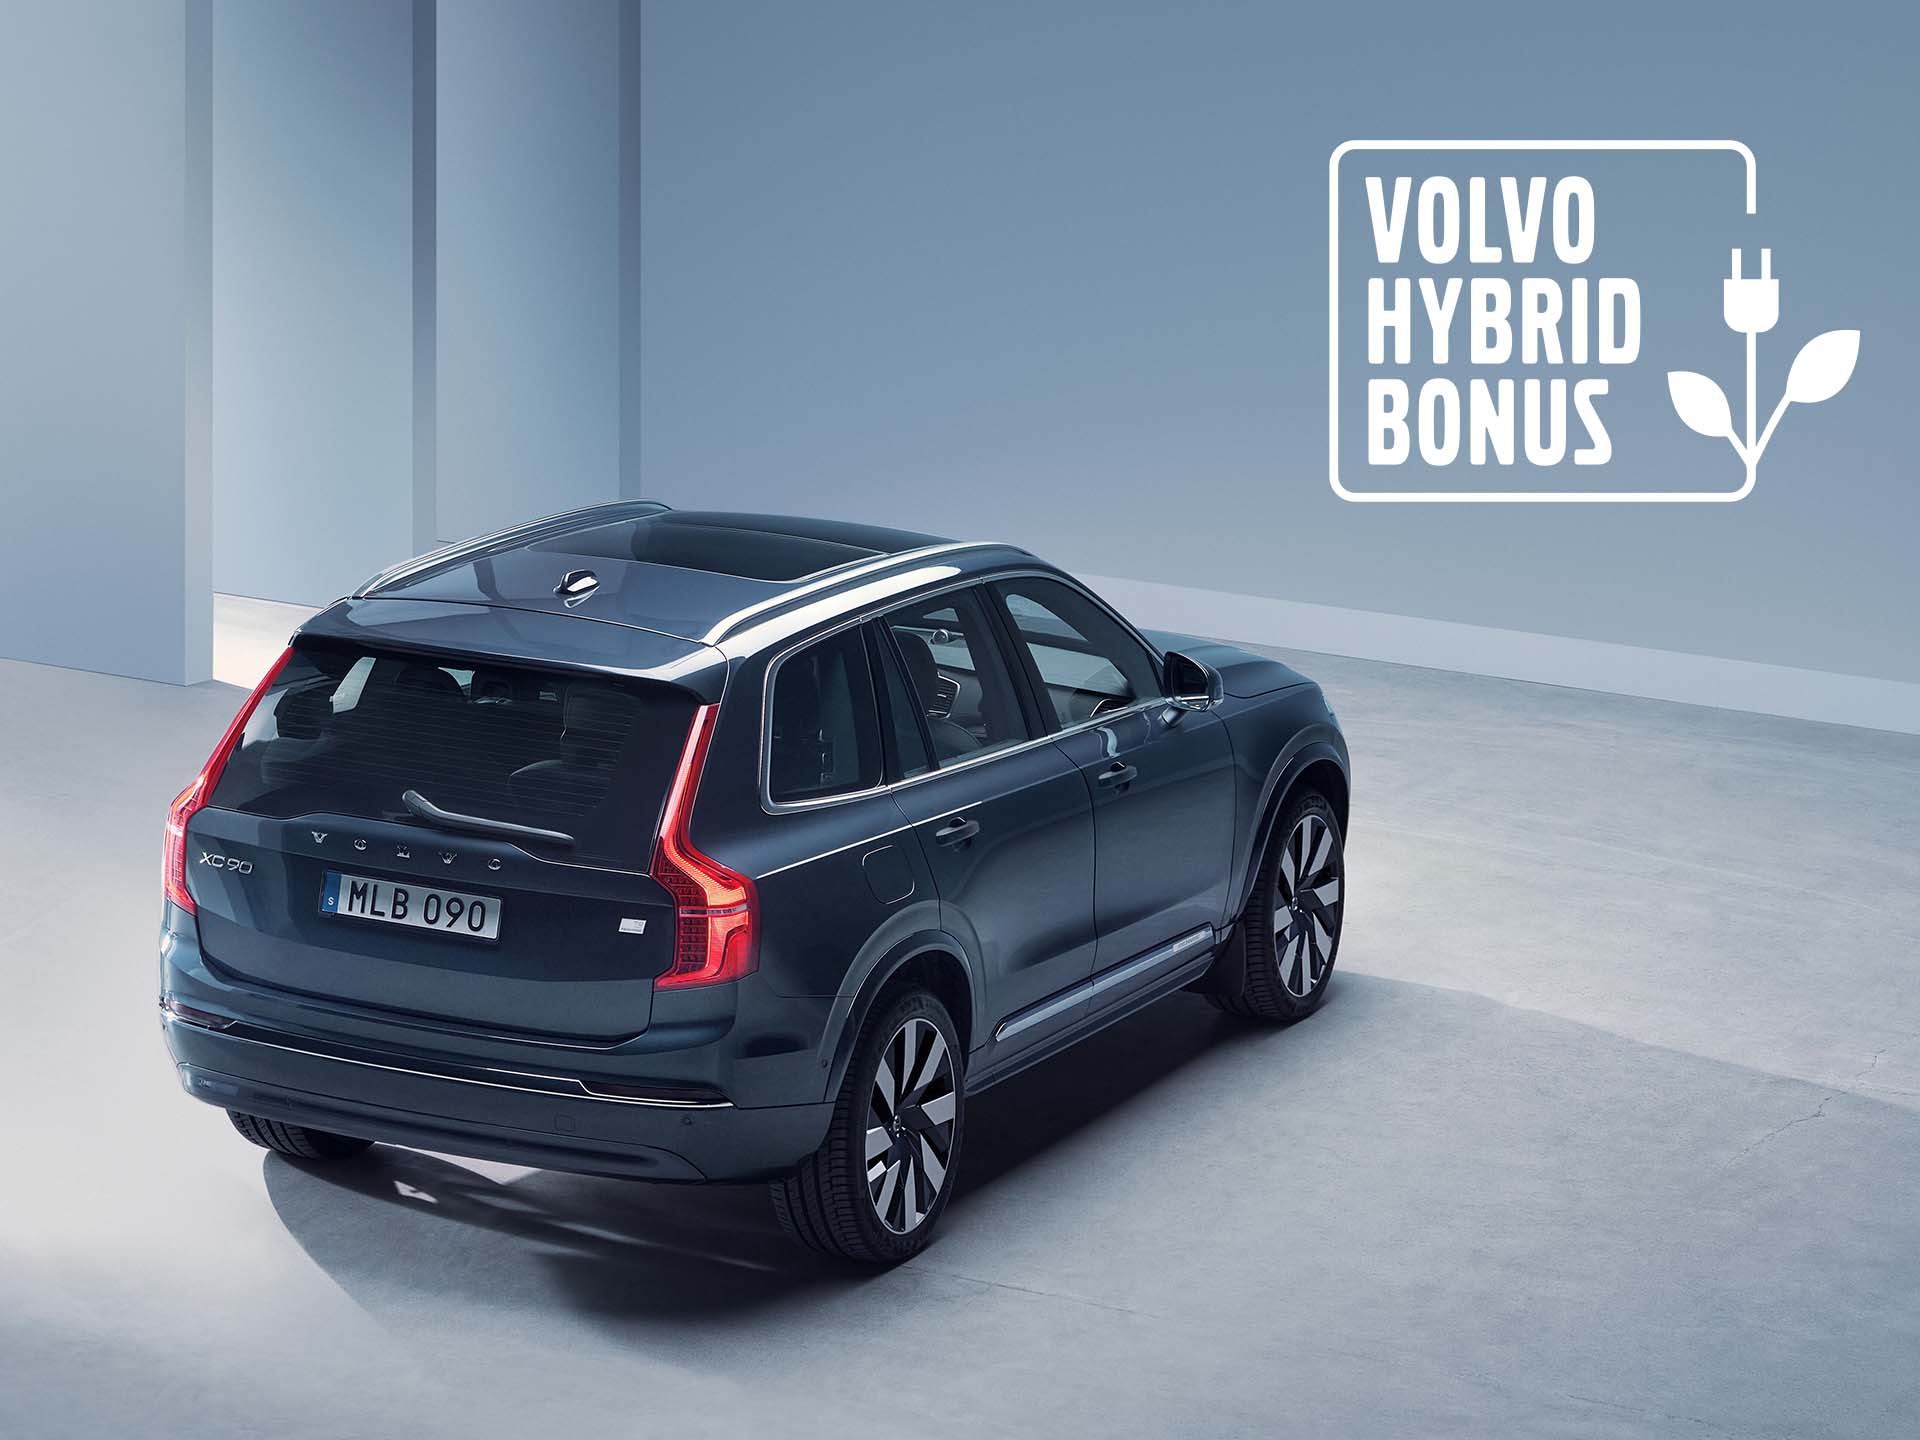 Der Volvo XC90 für den Volvo Hybrid Bonus